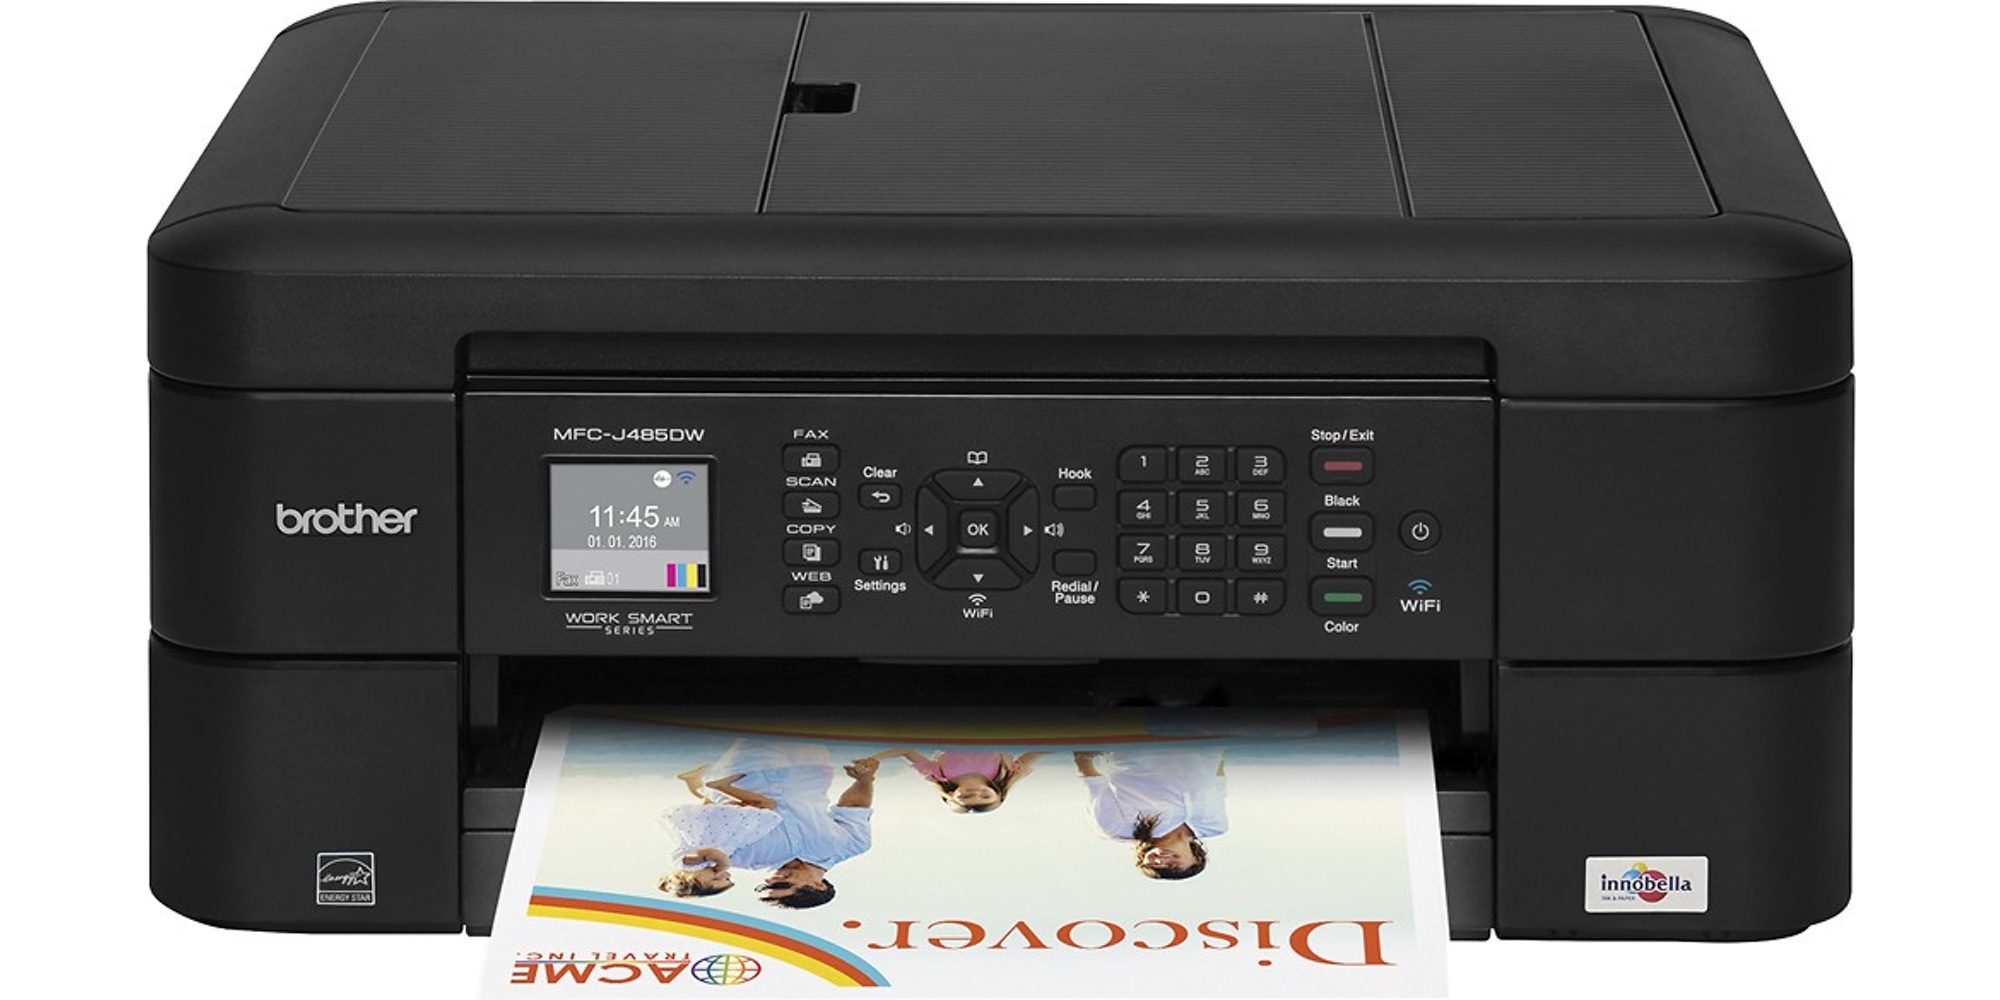 best inkjet printer for mac 2014